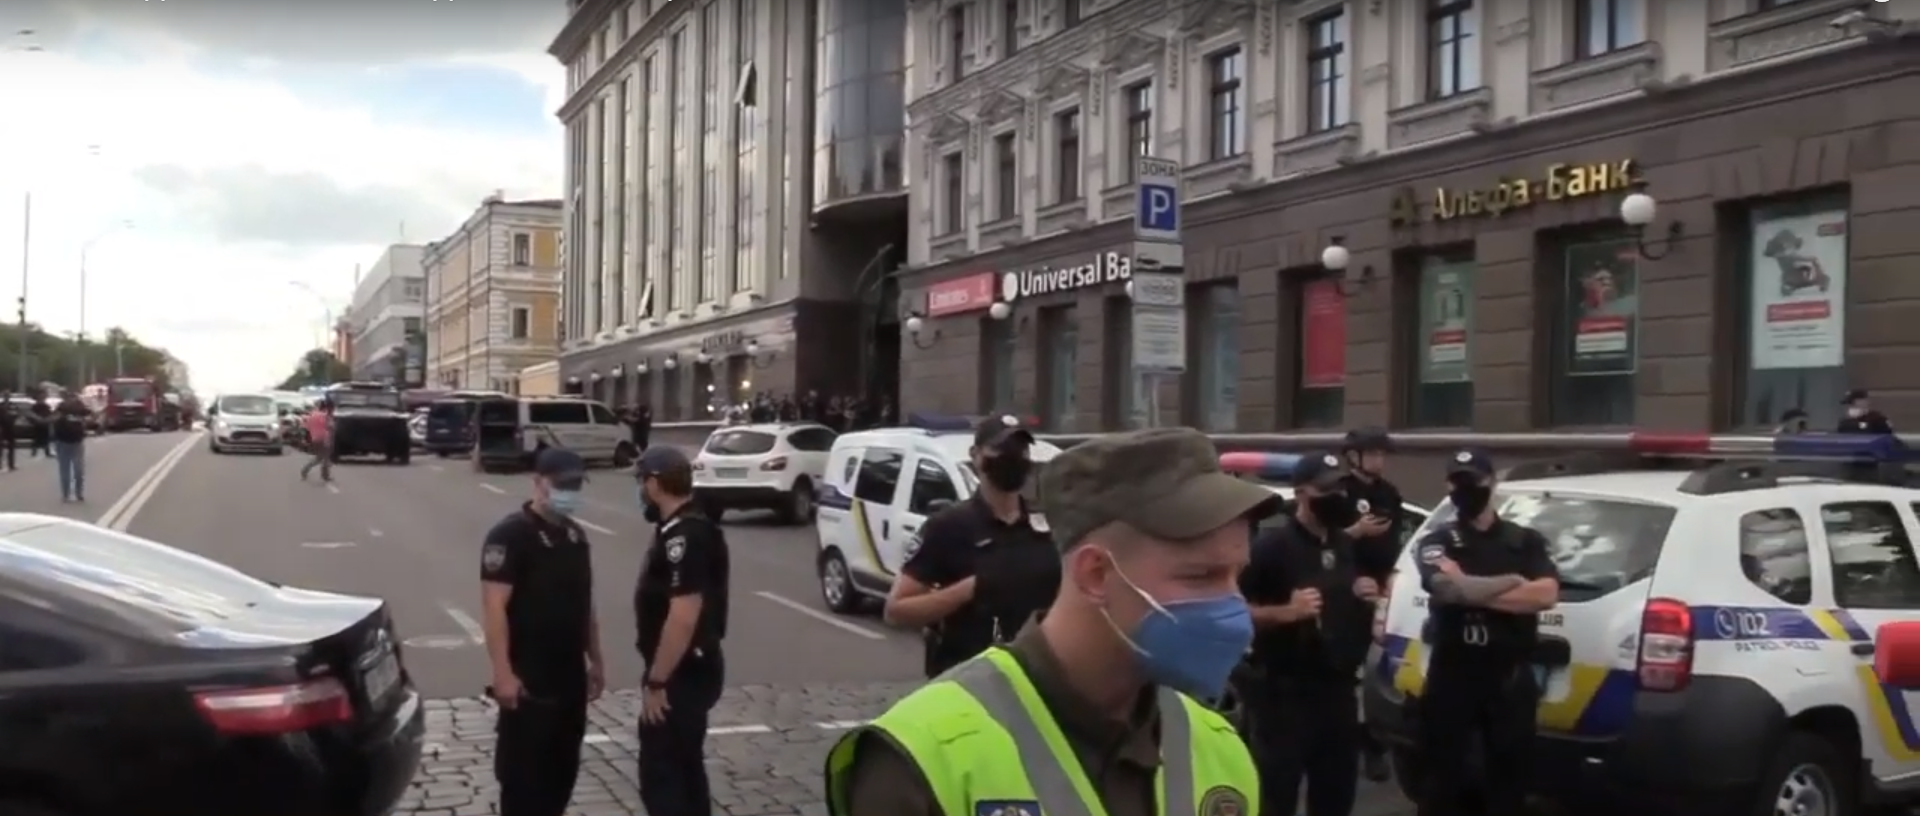 В киевском бизнес-центре неизвестный с бомбой захватил отделение банка вместе с заложниками